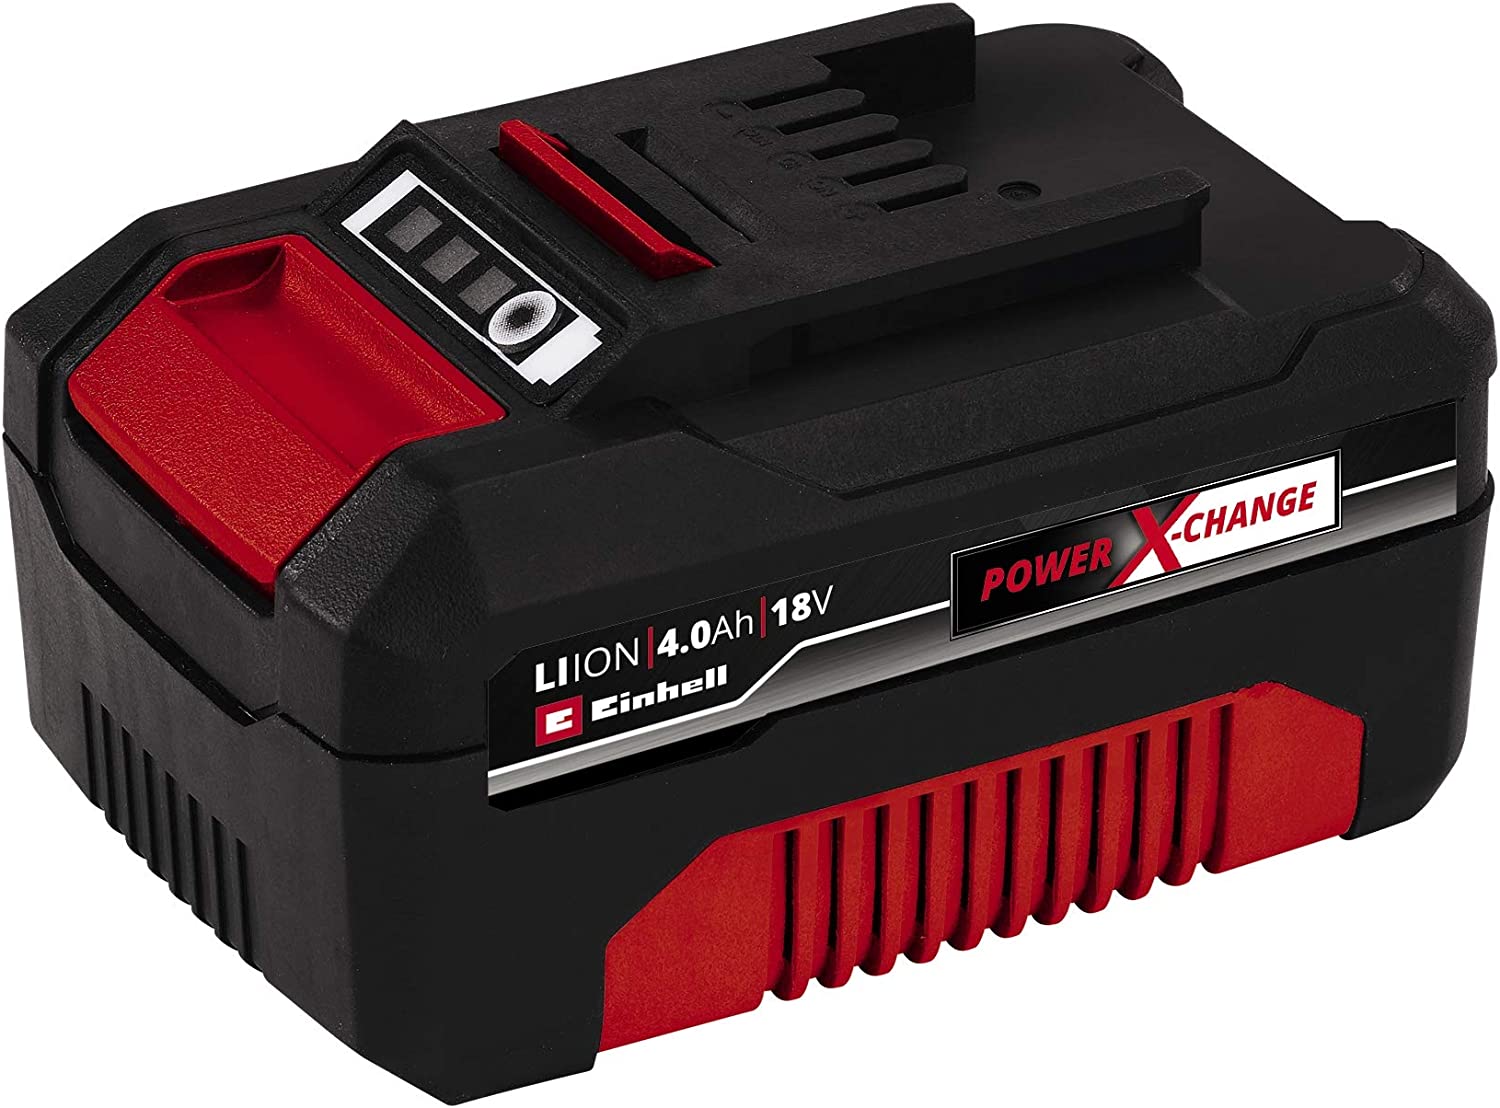 Originale Batteria Einhell 18V 4,0 Ah Power X-Change (18V, per tutti gli utensil